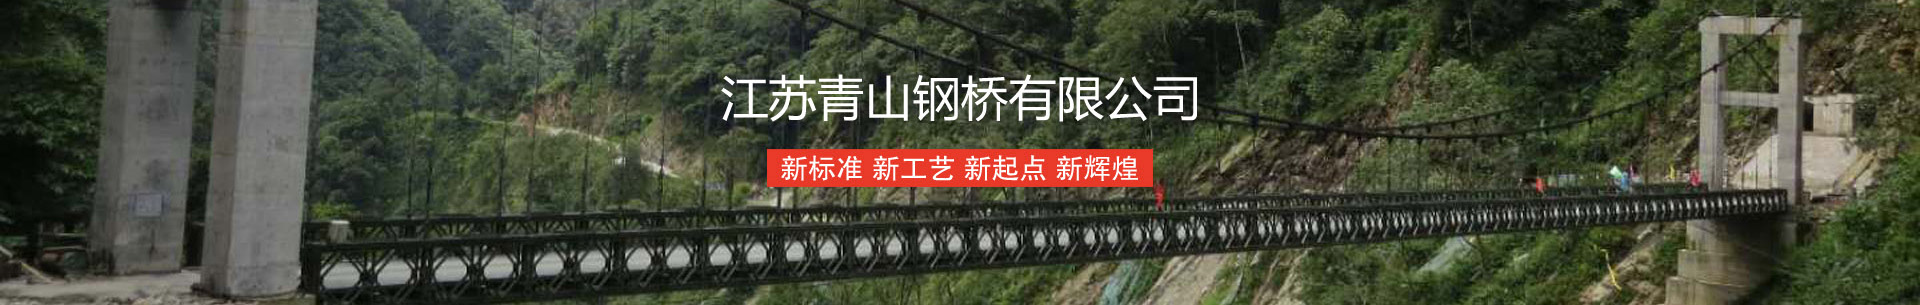 江苏青山钢桥有限公司